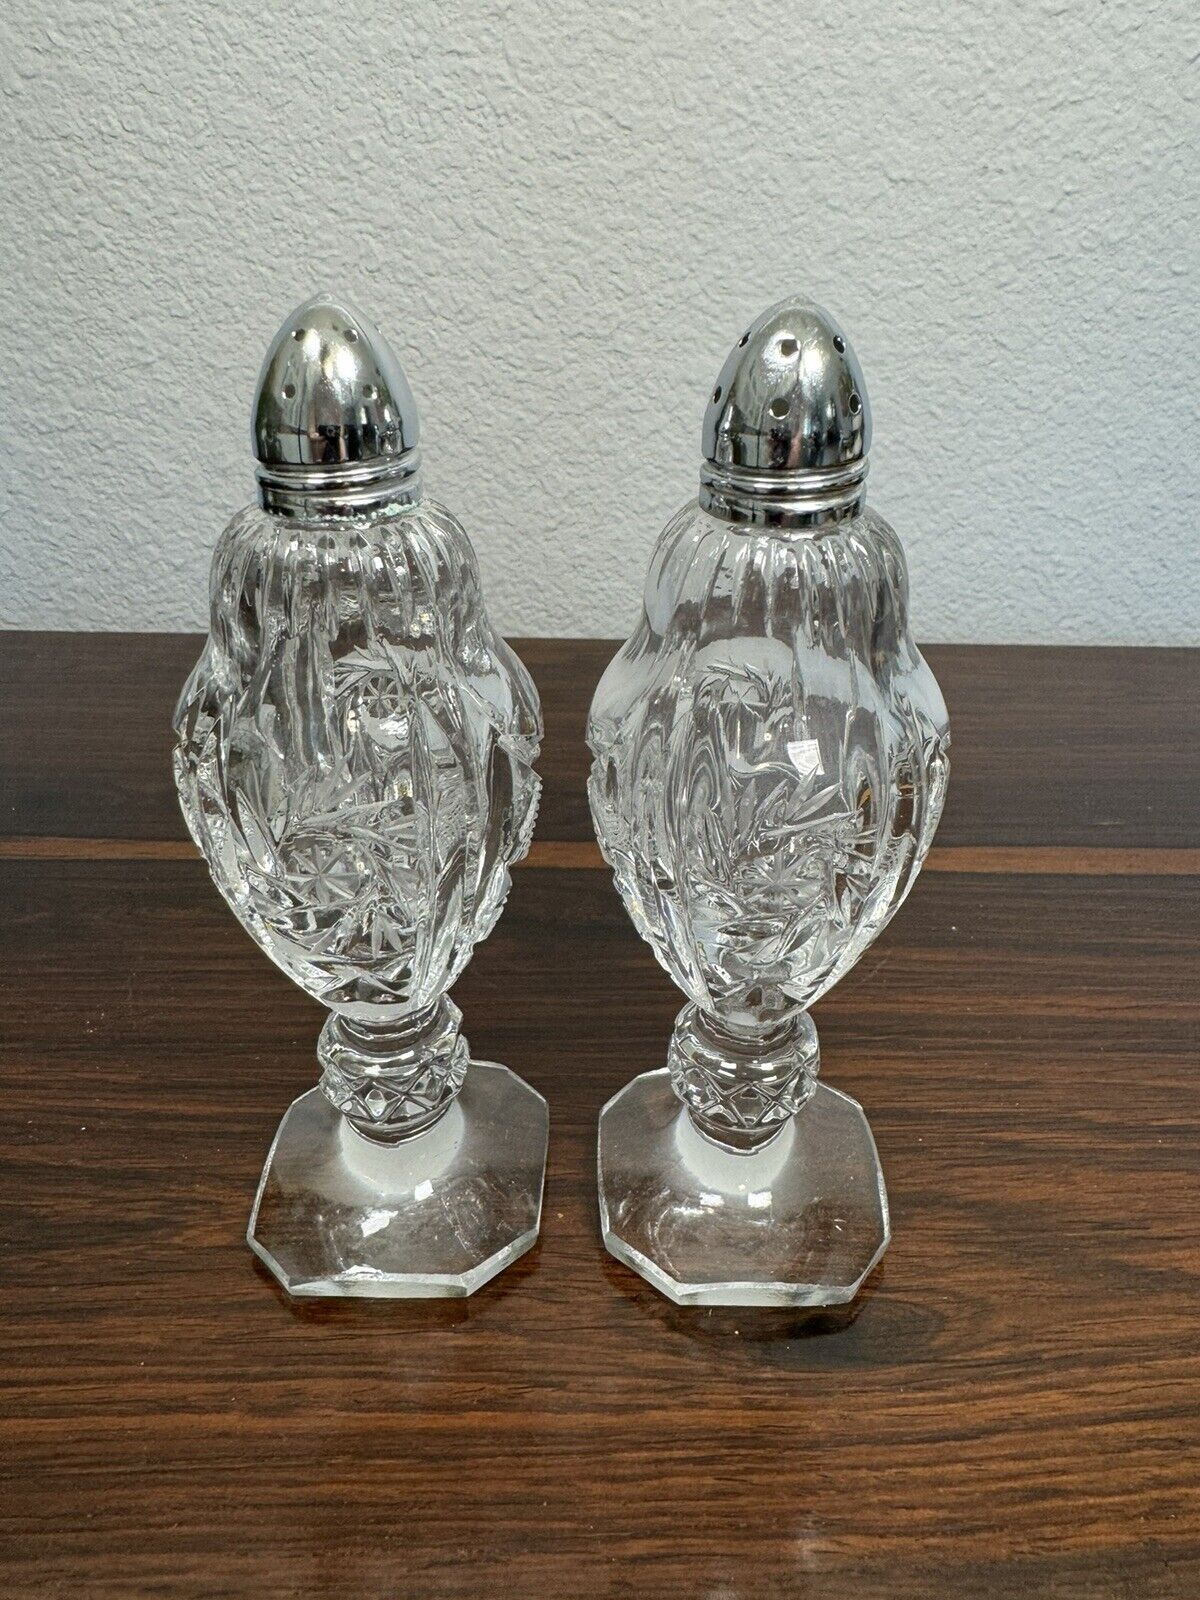 Vintage Crystal Pedestal Salt and Pepper Shakers